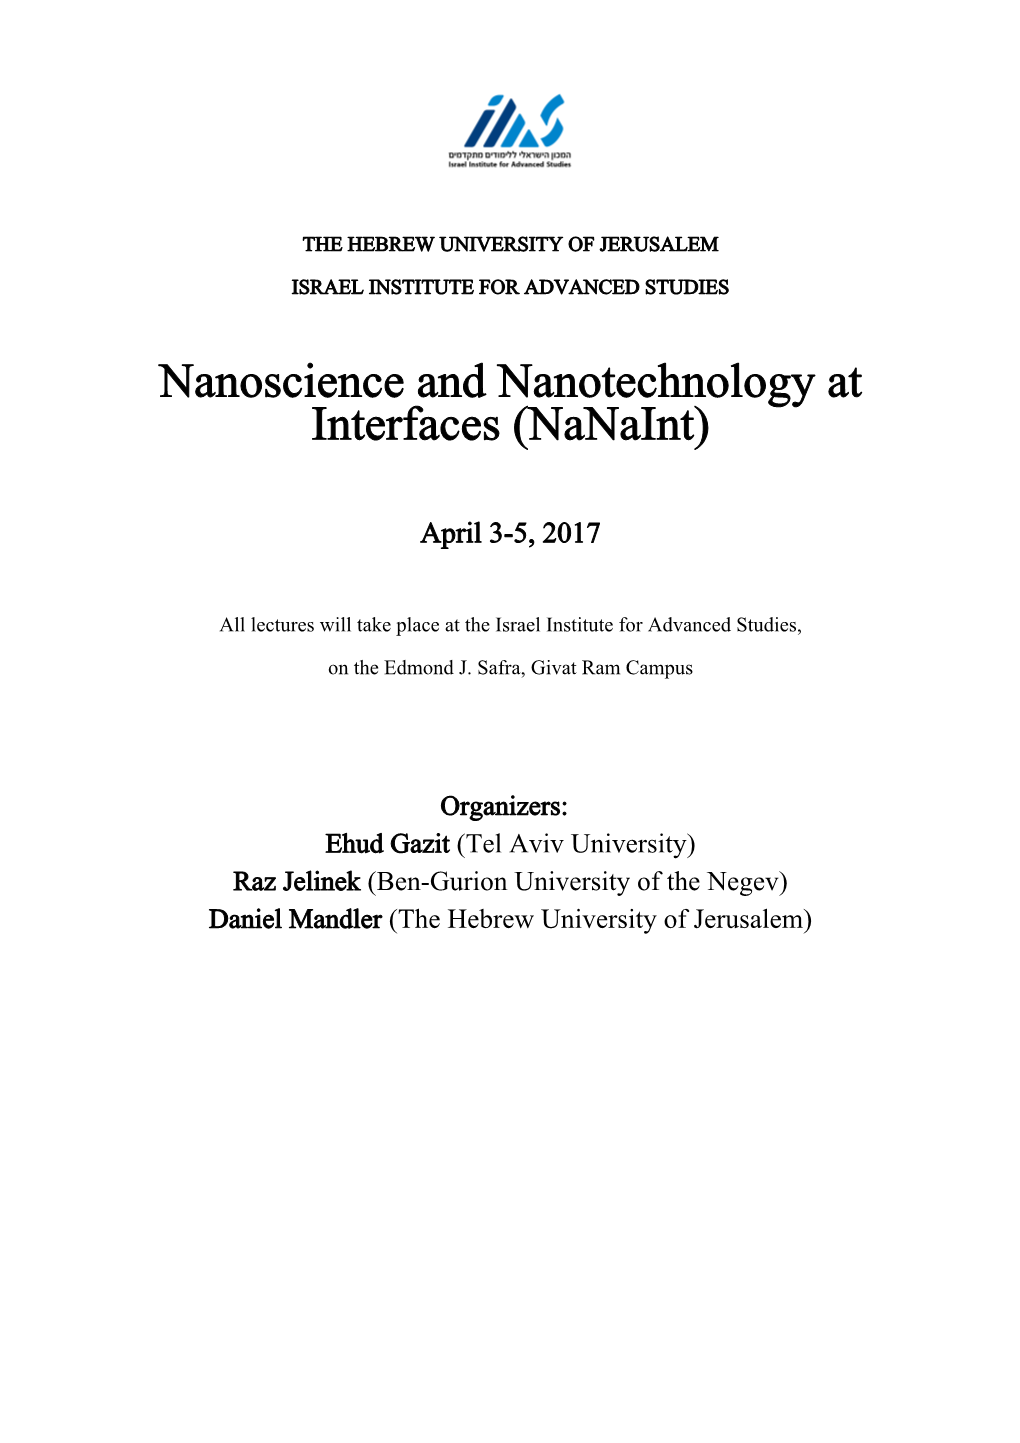 Nanoscience and Nanotechnology at Interfaces (Nanaint)